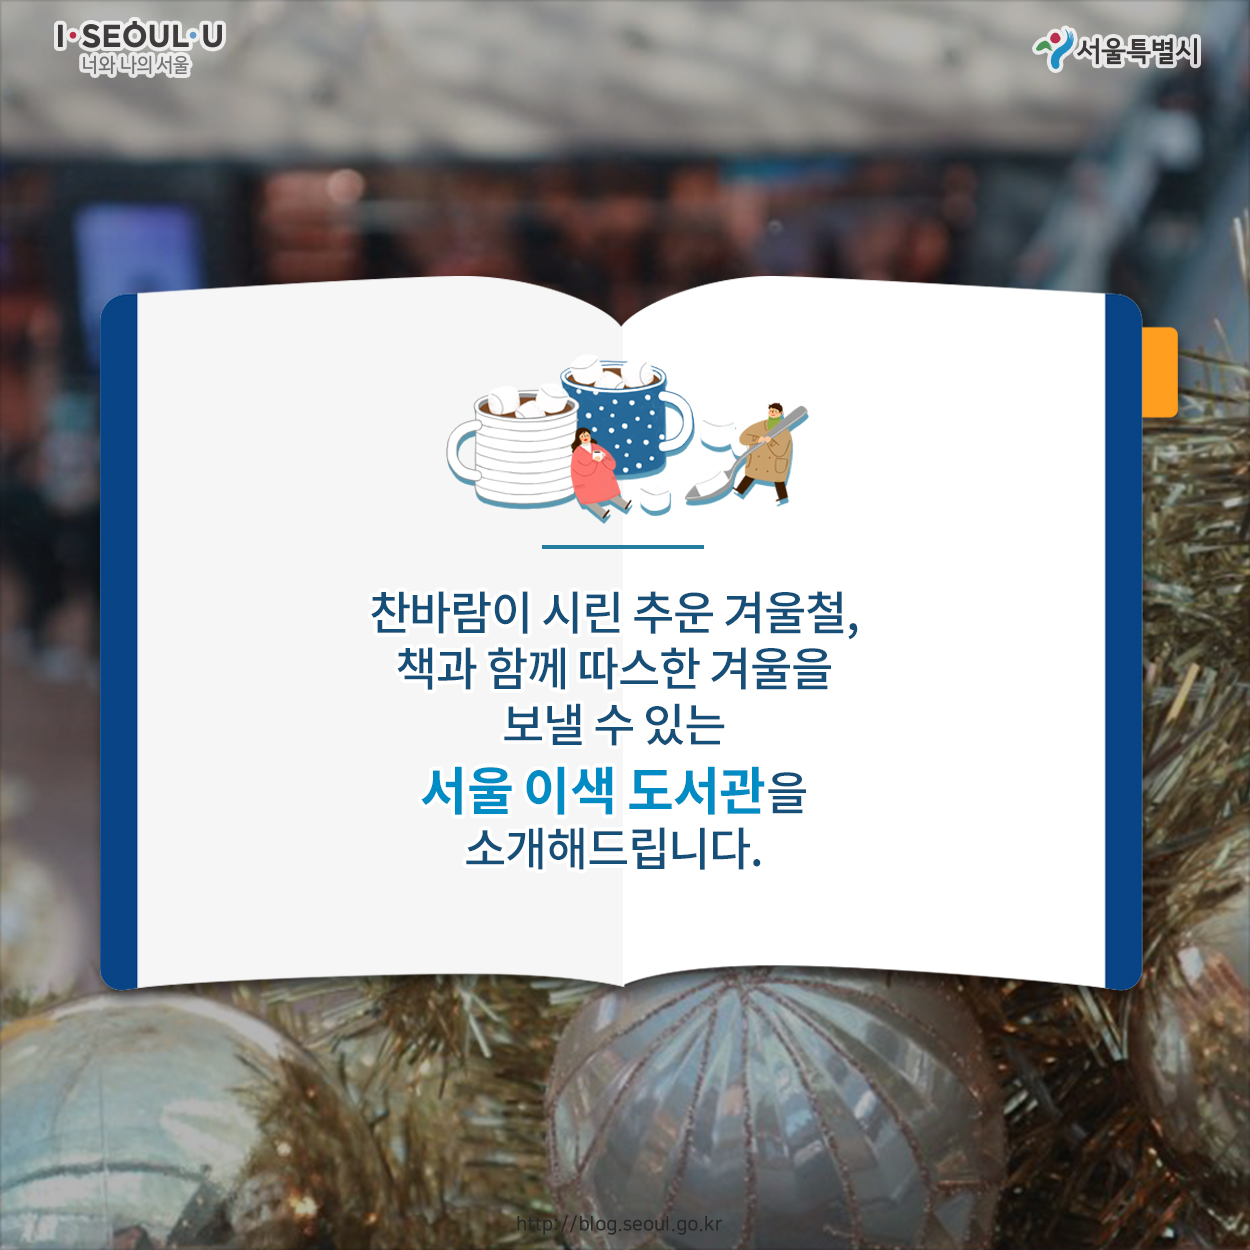 찬바람이 시린 추운 겨울철, 책과 함께 따스한 겨울을 보낼 수 있는 서울 이색 도서관을 소개해드립니다.